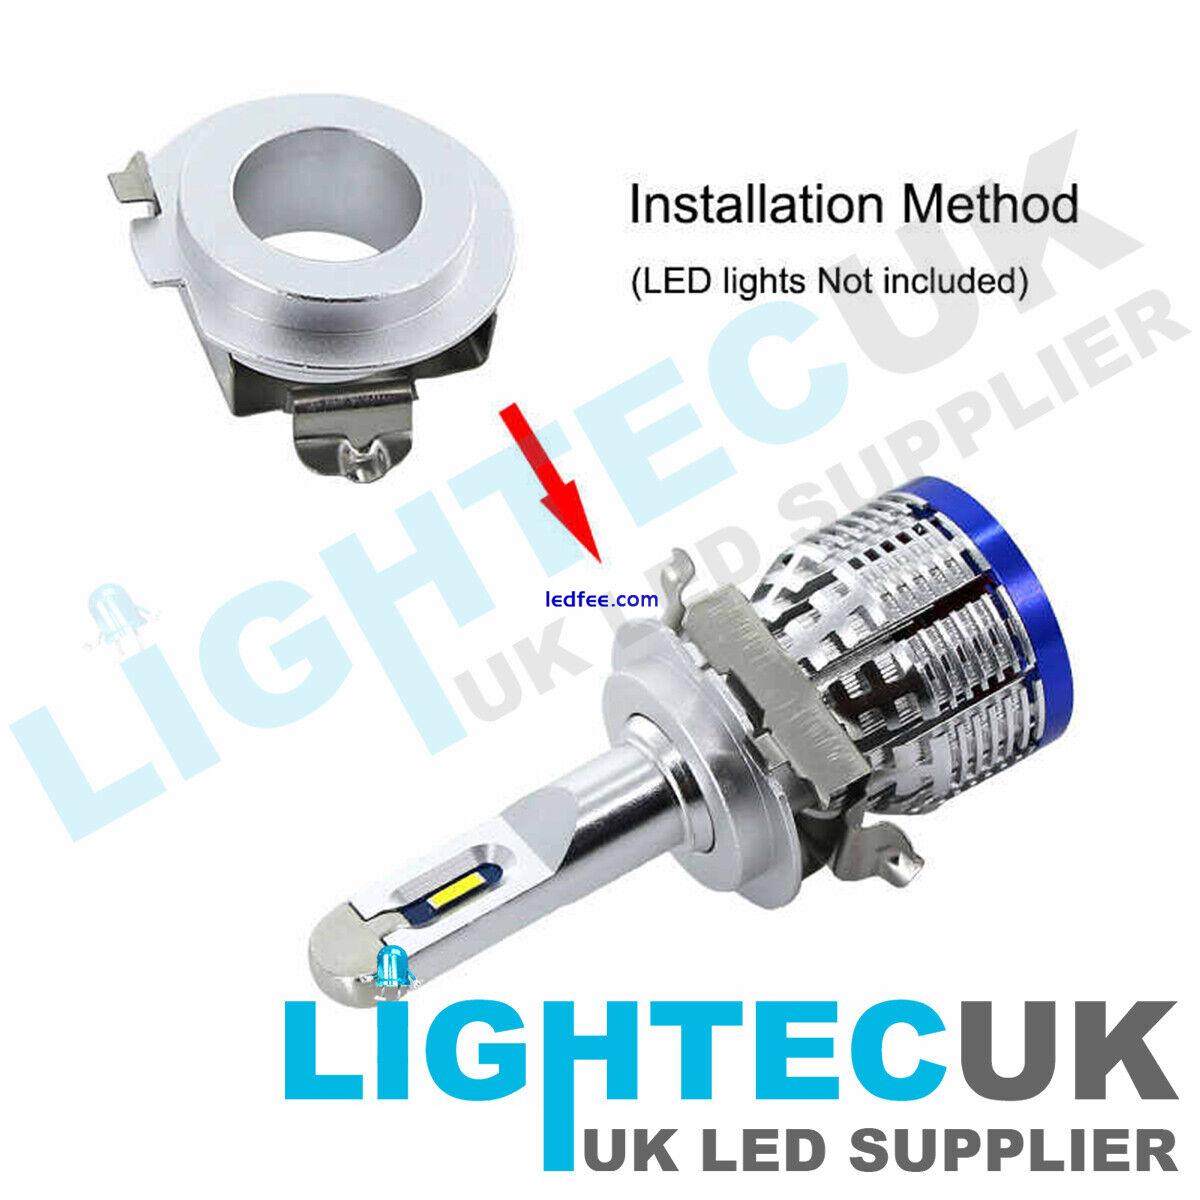 2 LIGHTEC UK UNIVERSAL H7 LED RETAINER BULB HOLDER CLIP ADAPTER HEAD LIGHT  1 